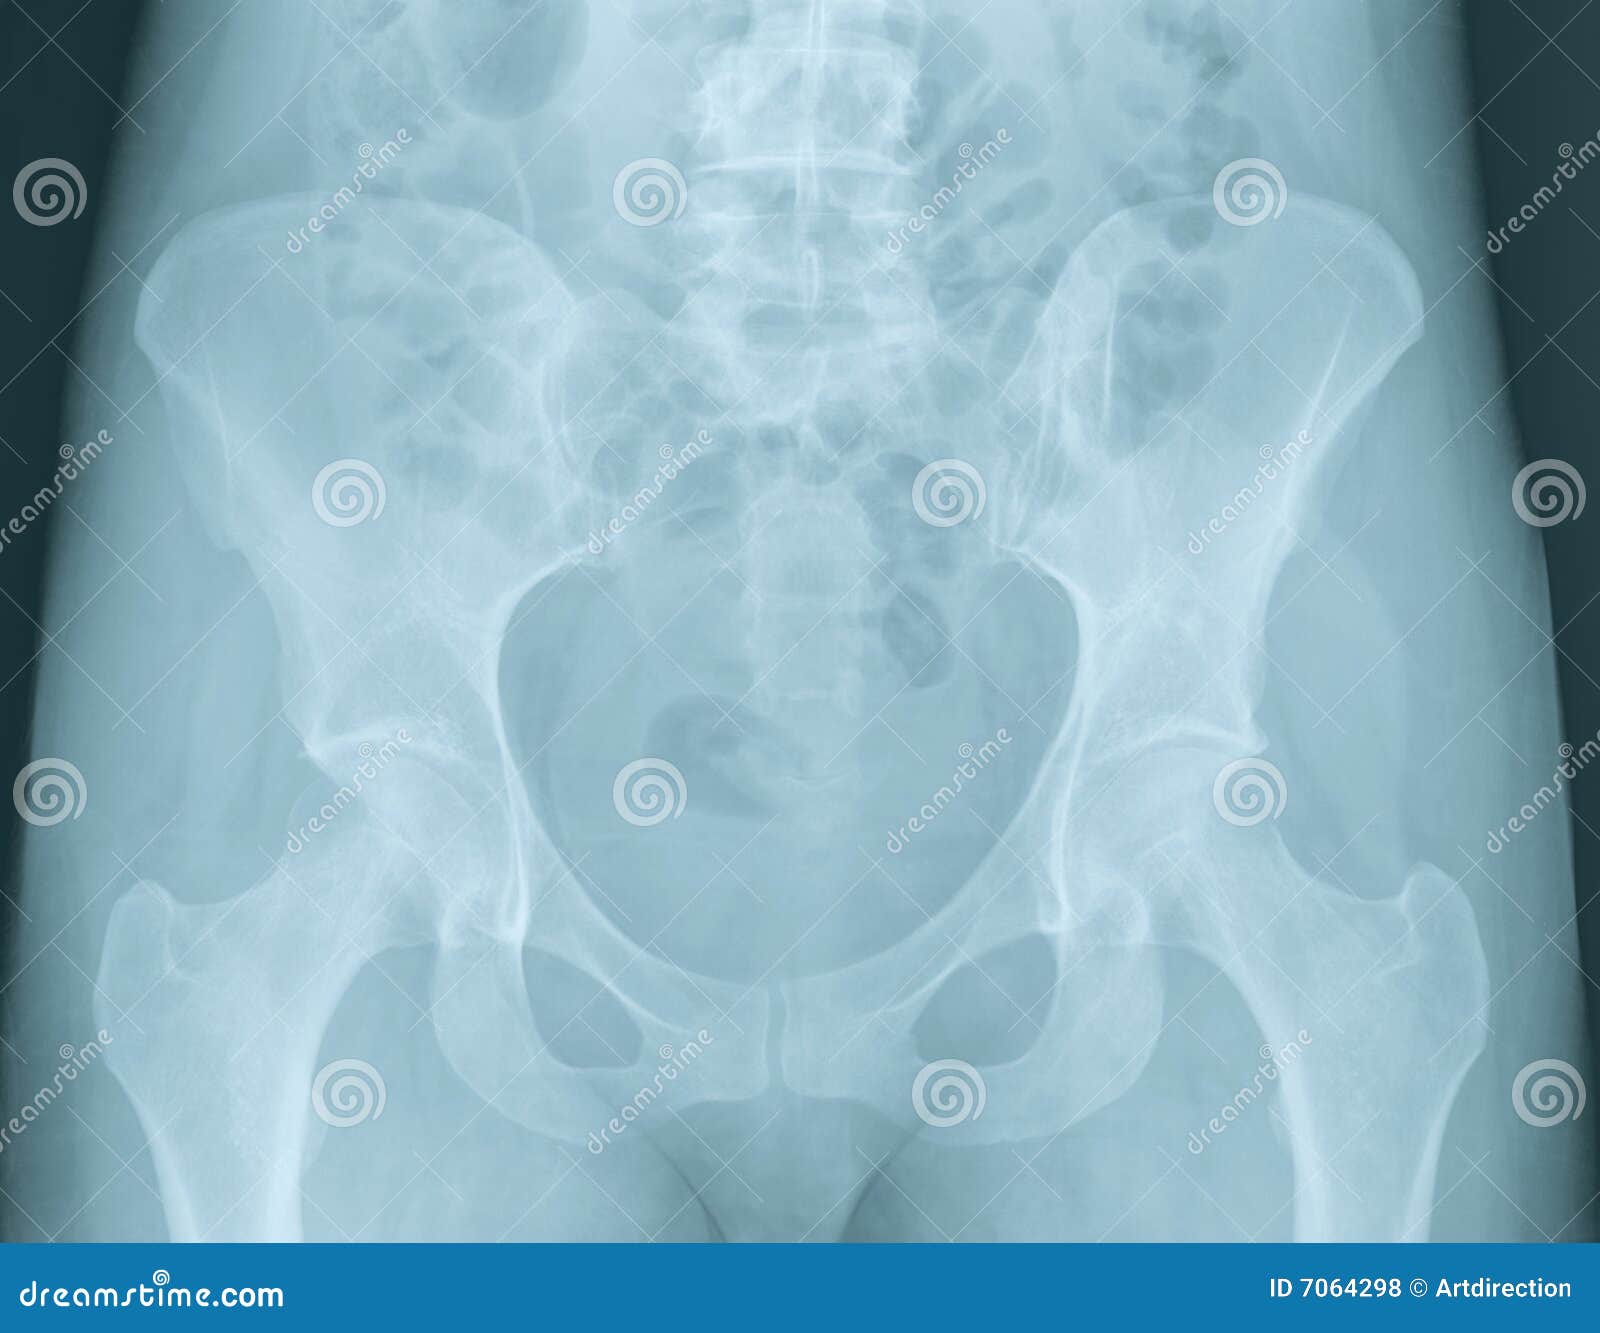 骨盆x光片分析（站立位），看片不求人~ - 知乎